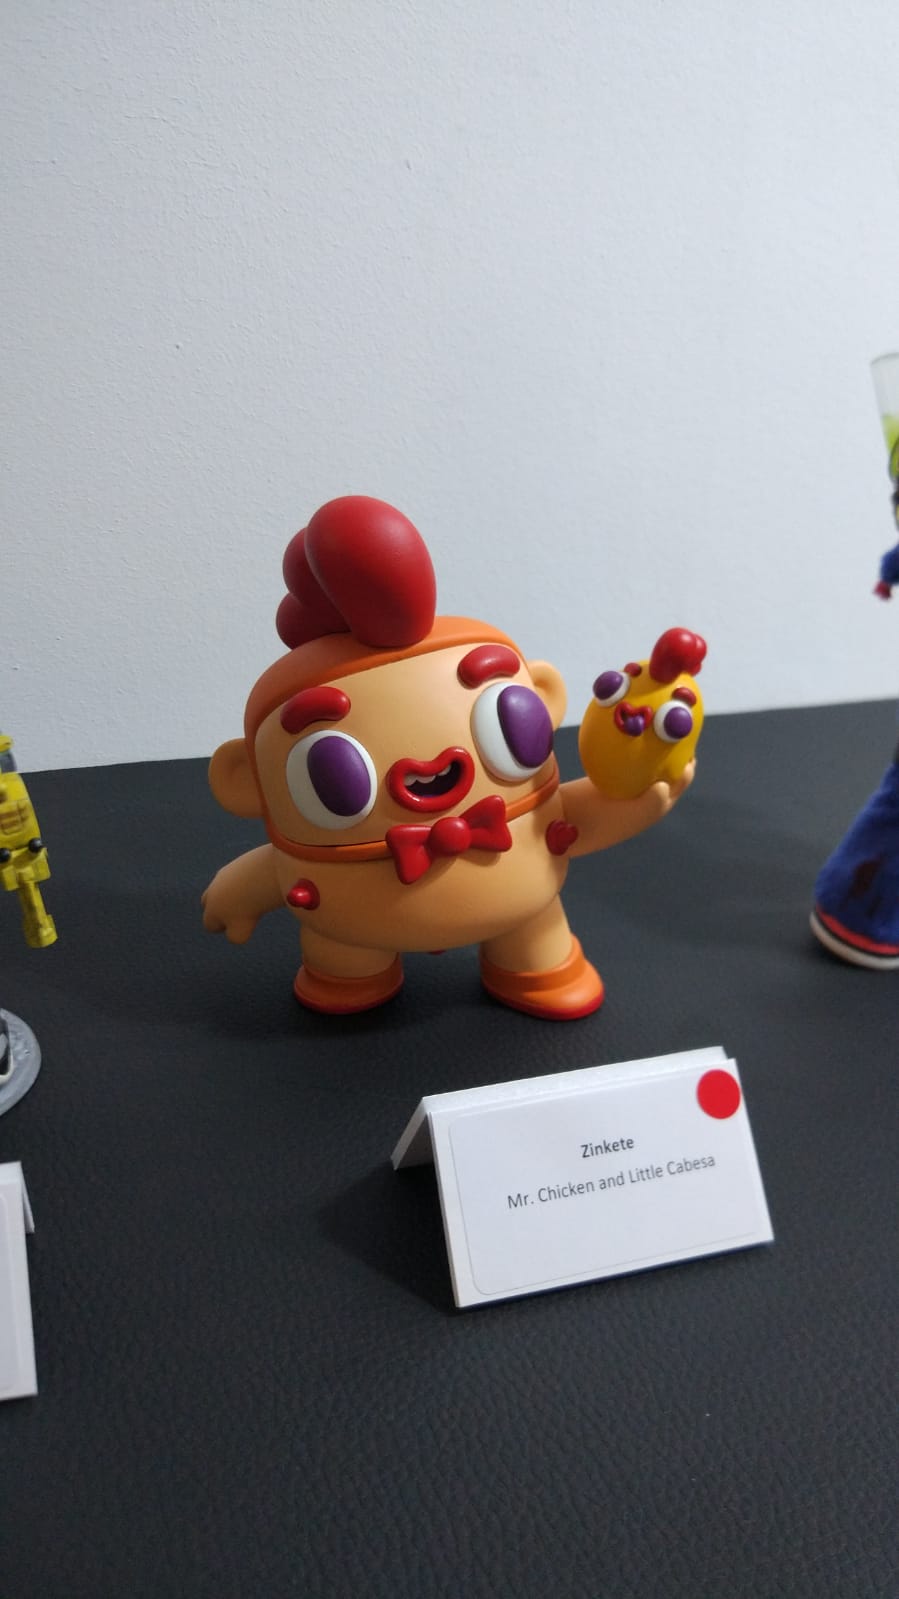 Inauguración Expo Toys BCN 2019 Art Toys Exhibition